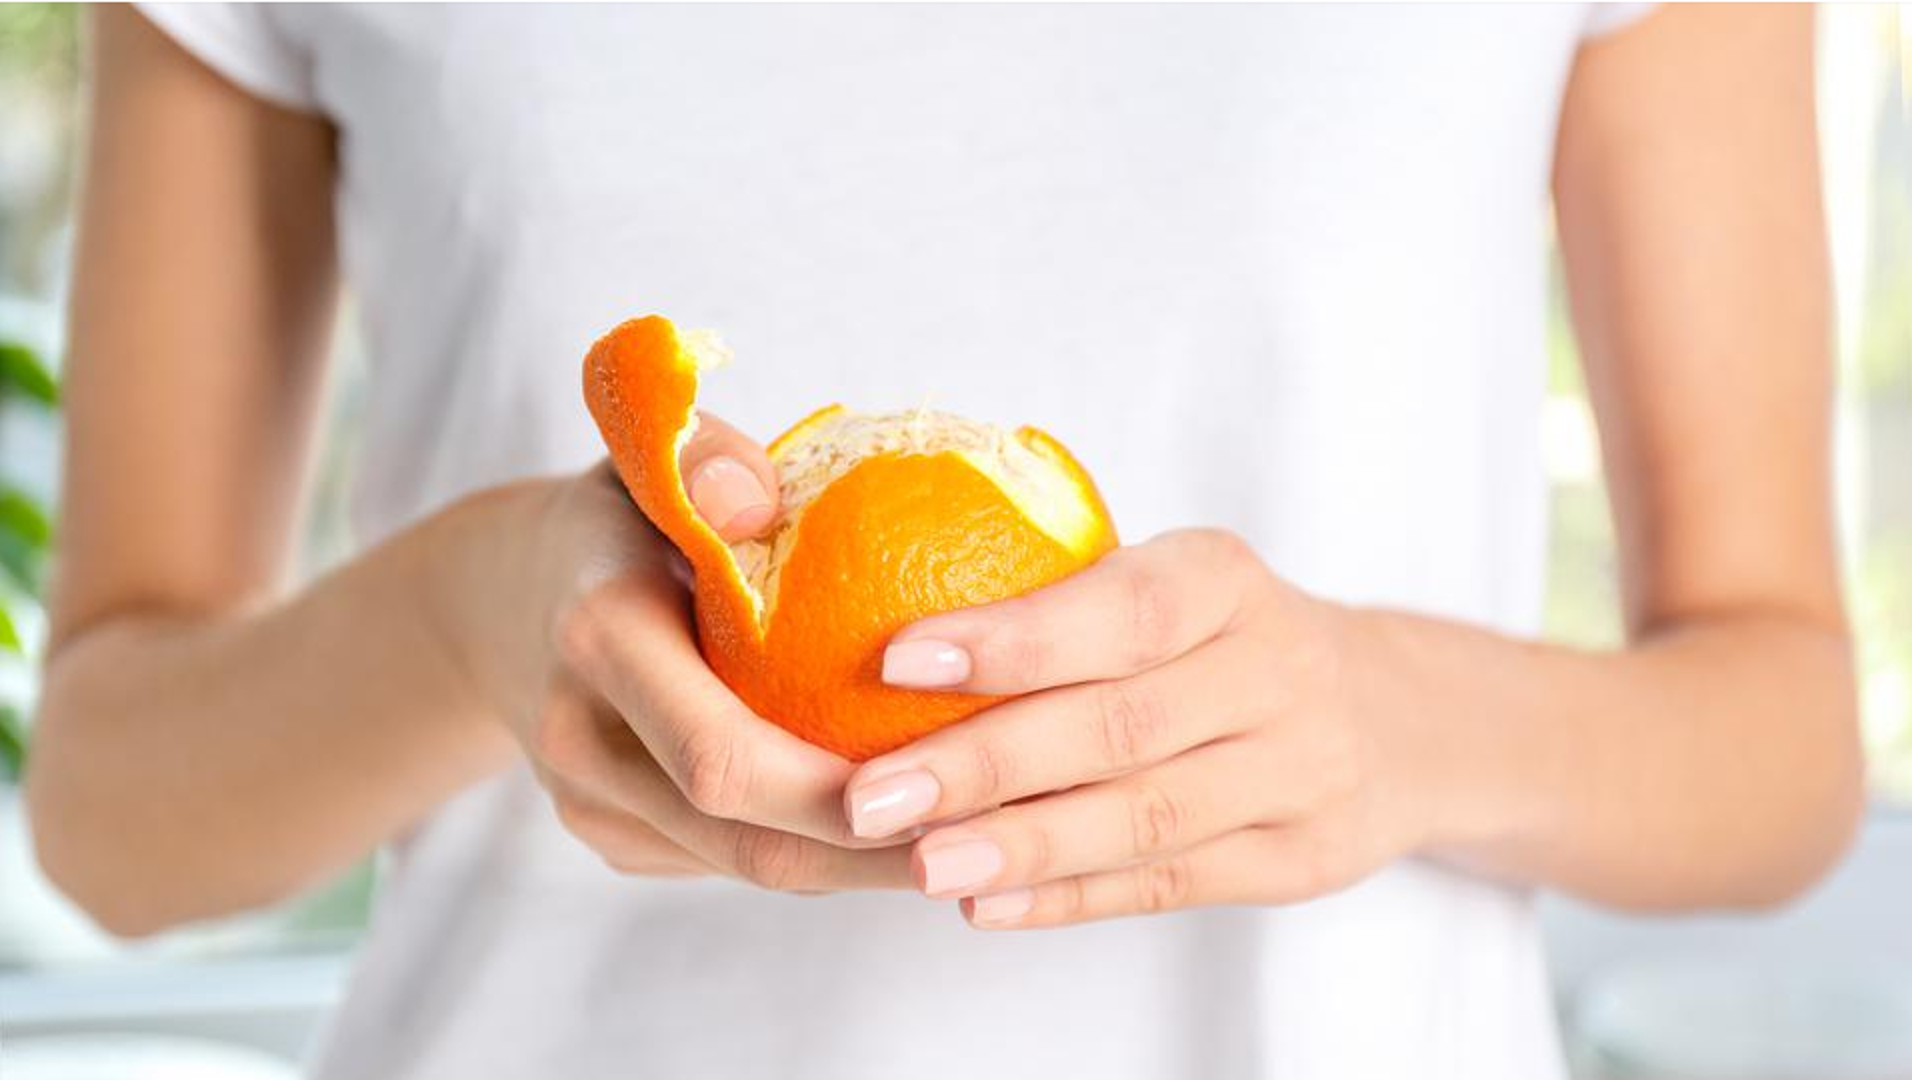 Prosječna odrasla osoba treba između 75 i 90 miligrama (mg) vitamina C dnevno. Međutim, tijelo ne može proizvesti vitamin C, pa se on mora unositi prehranom. Primjeri citrusnog voća i njihovog sadržaja vitamina C:

Naranče: 82,7 mg vitamina C po voću

Mandarine: 32 mg vitamina C po plodu

Limeta: 19,5 mg vitamina C po voću

Grejpfrut: 39,3 mg vitamina C po 1/2 ploda